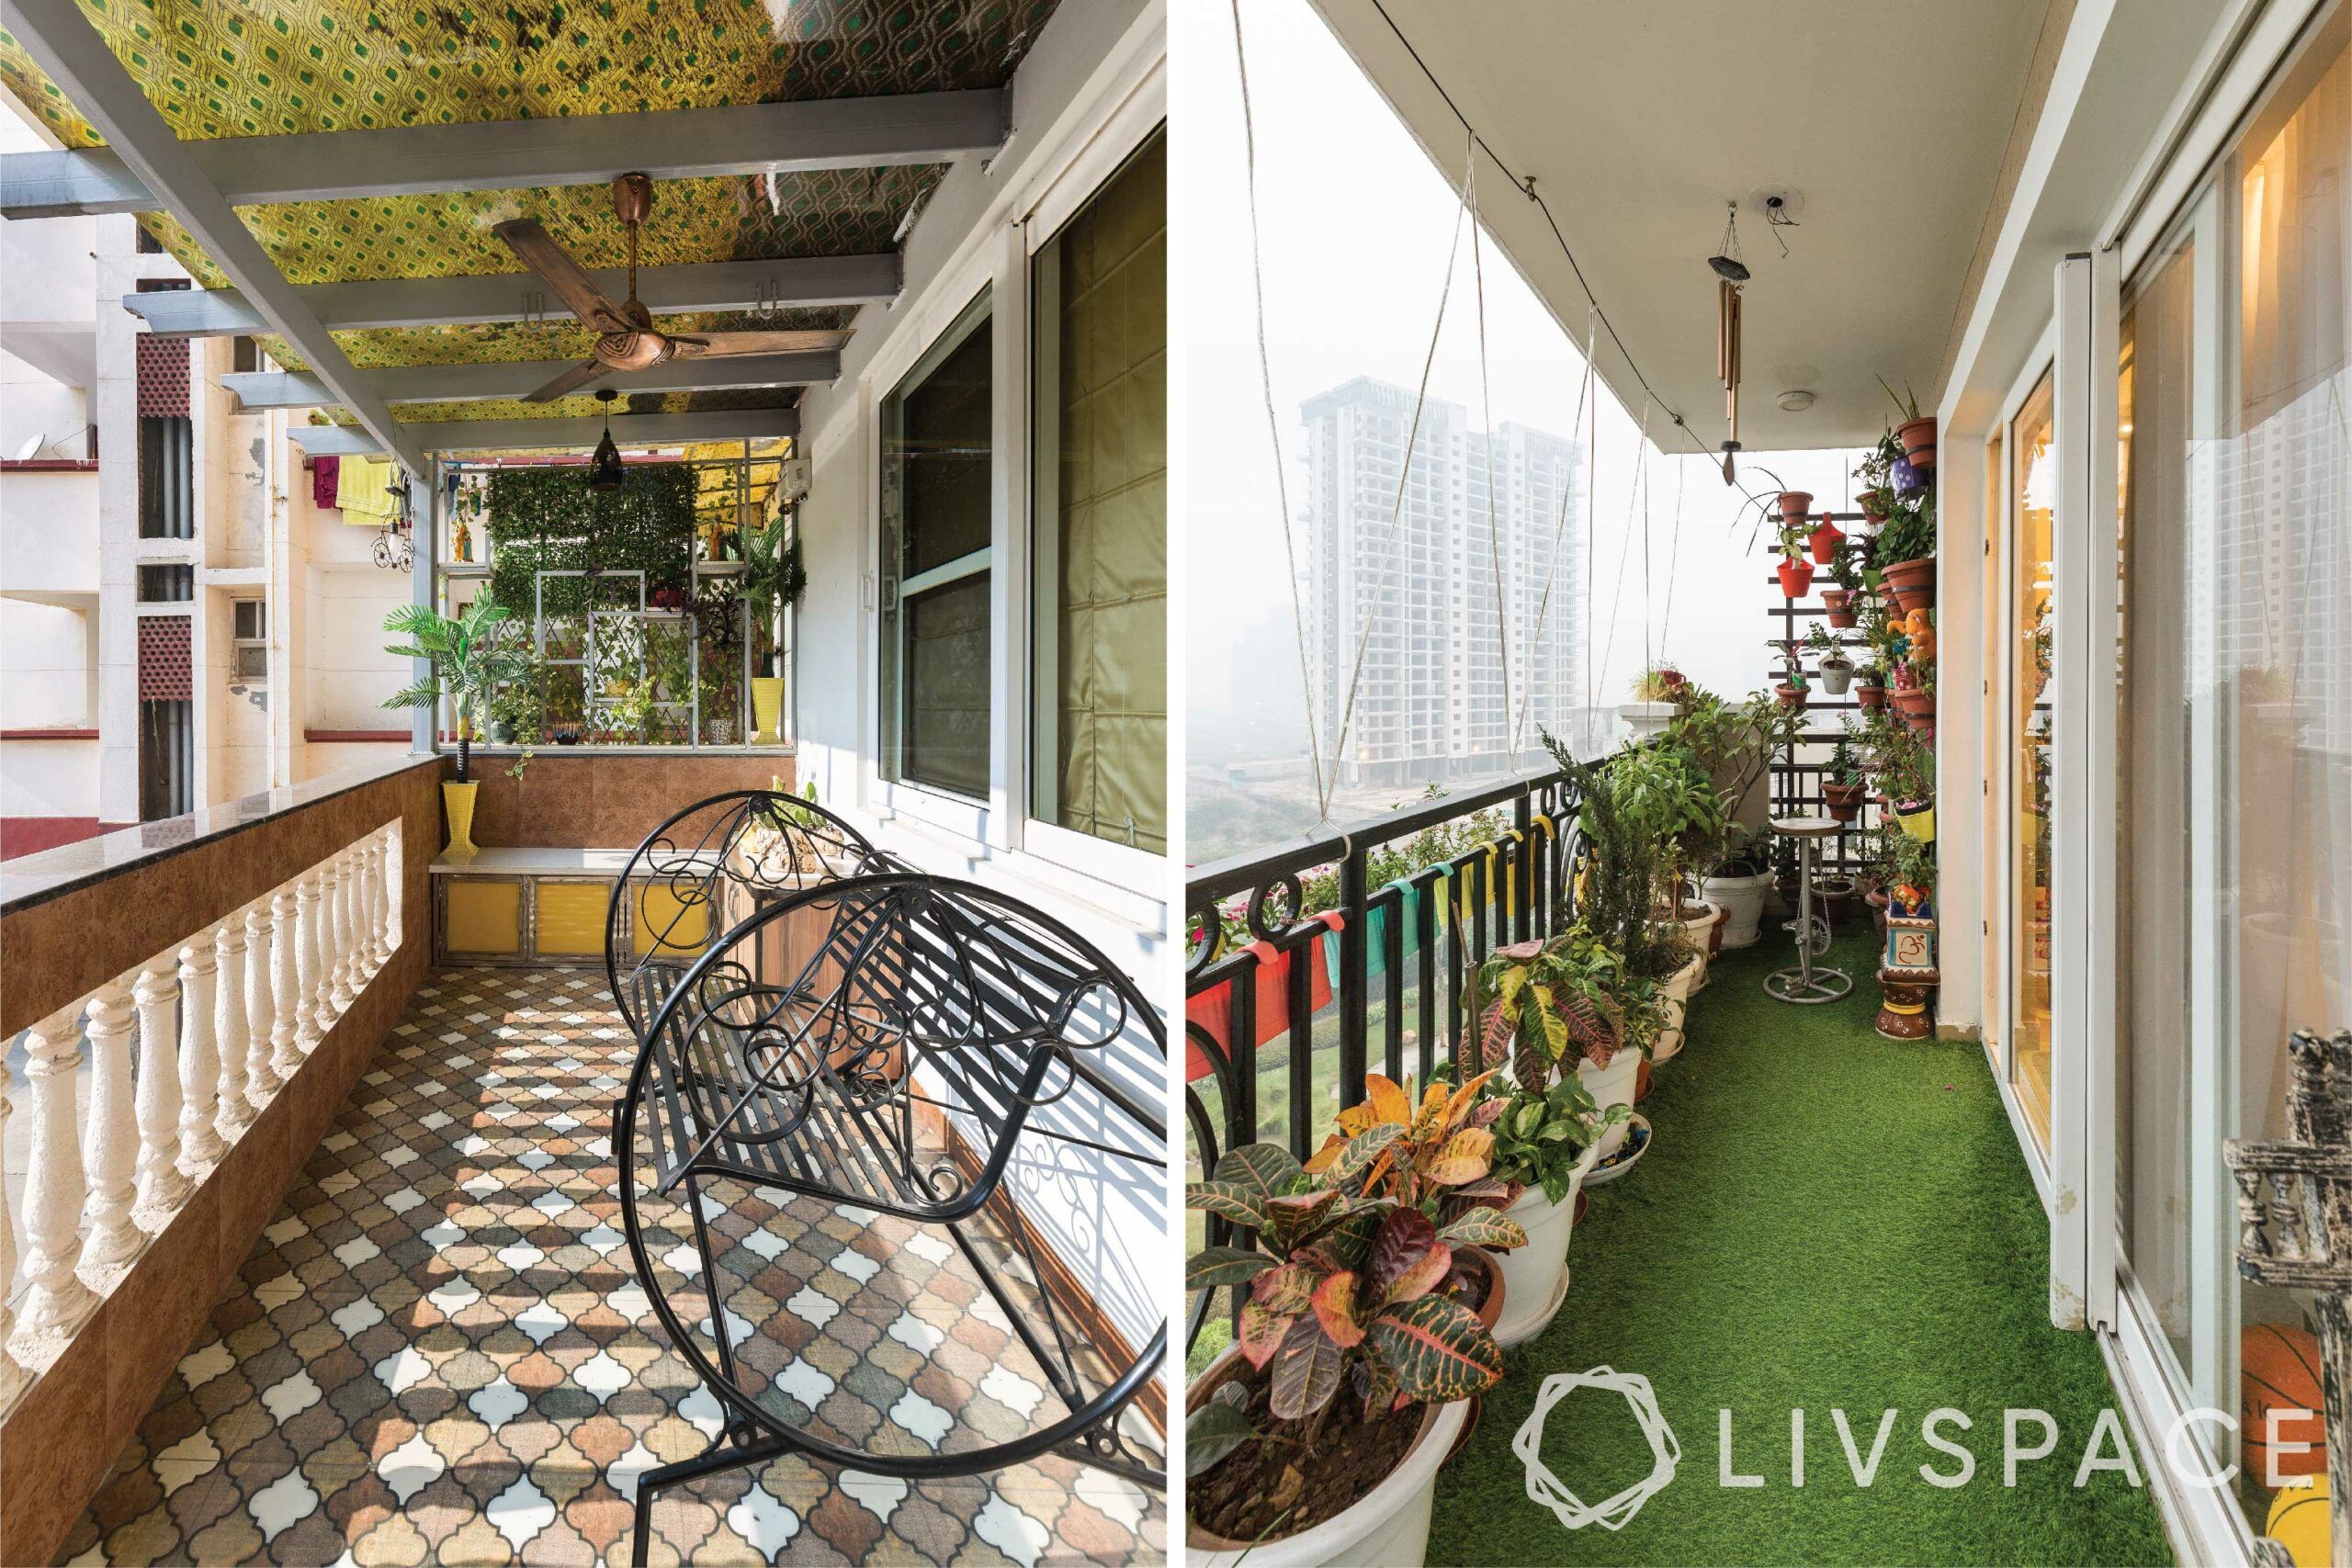 house balcony design-moroccan tiles-artificial turf-iron bench-planters
